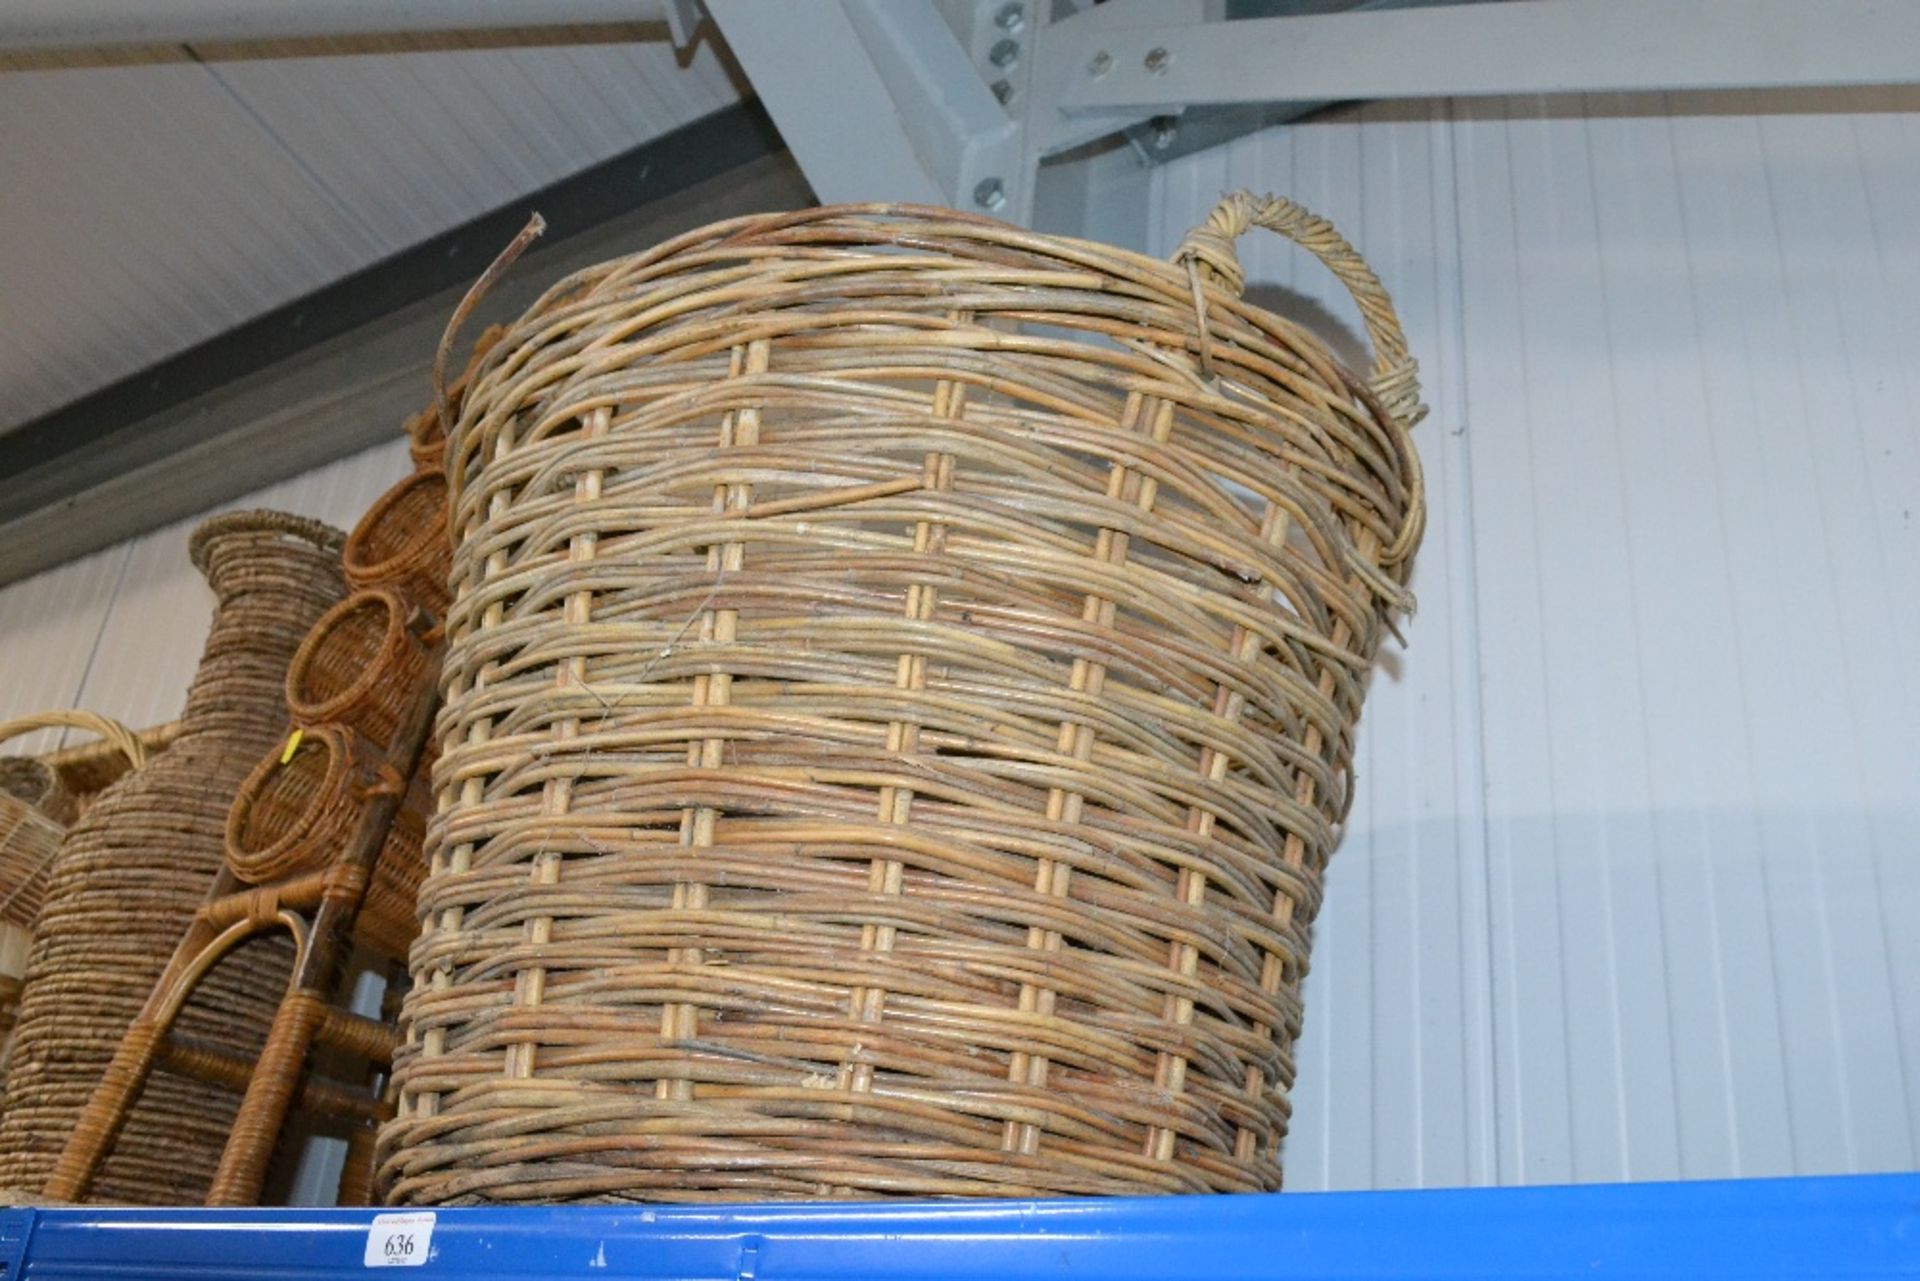 A wicker log basket